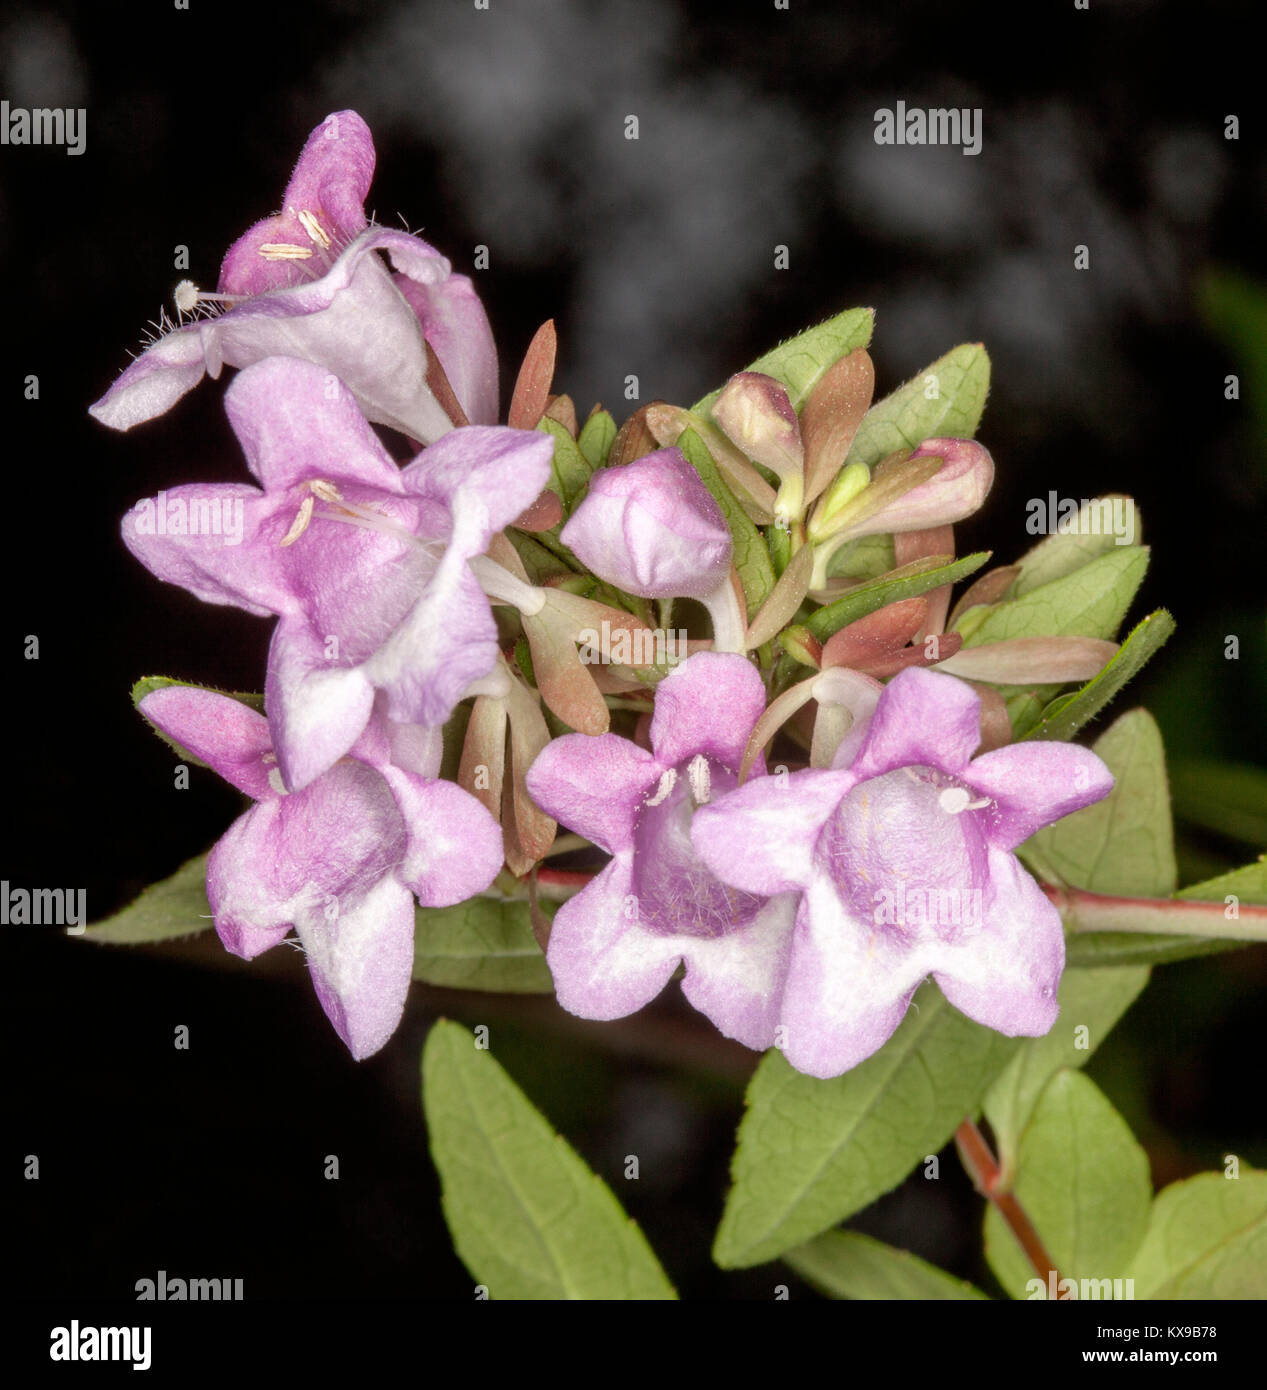 Fleurs parfumées rose pâle et feuilles vert clair de l'Abelia schummannii sur fond sombre Banque D'Images